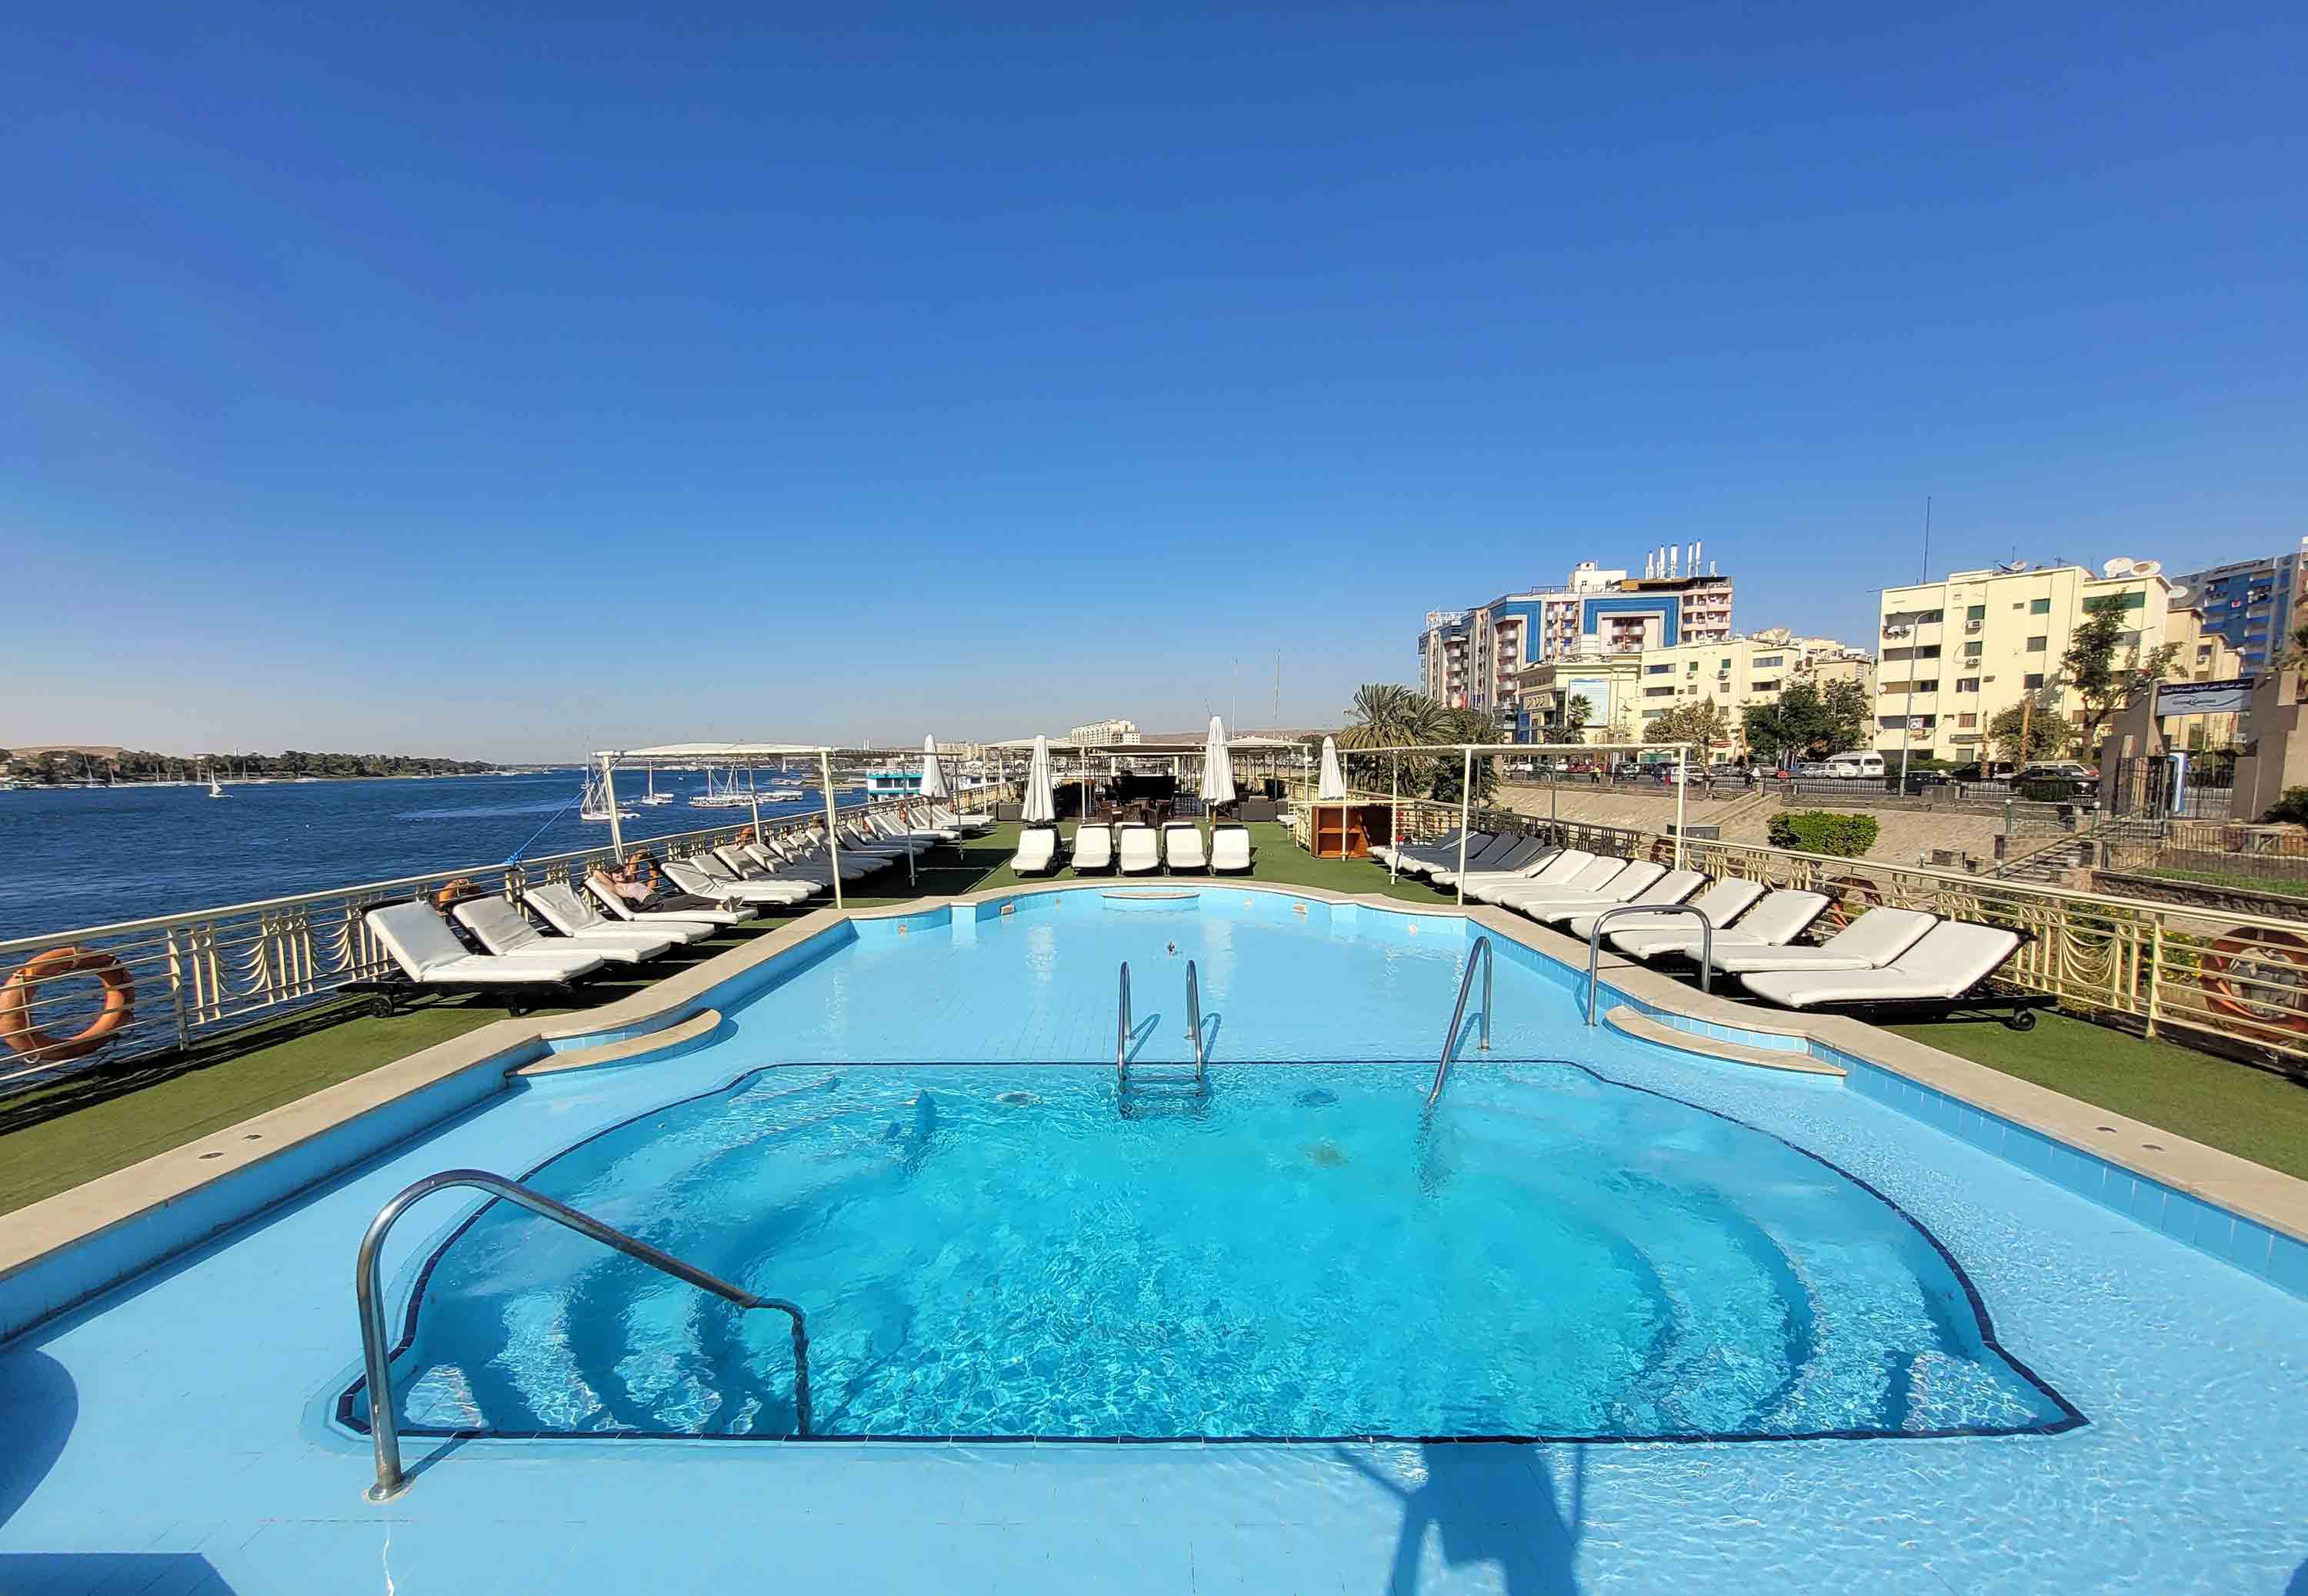 Pool and lounge area on a Nile cruise ship